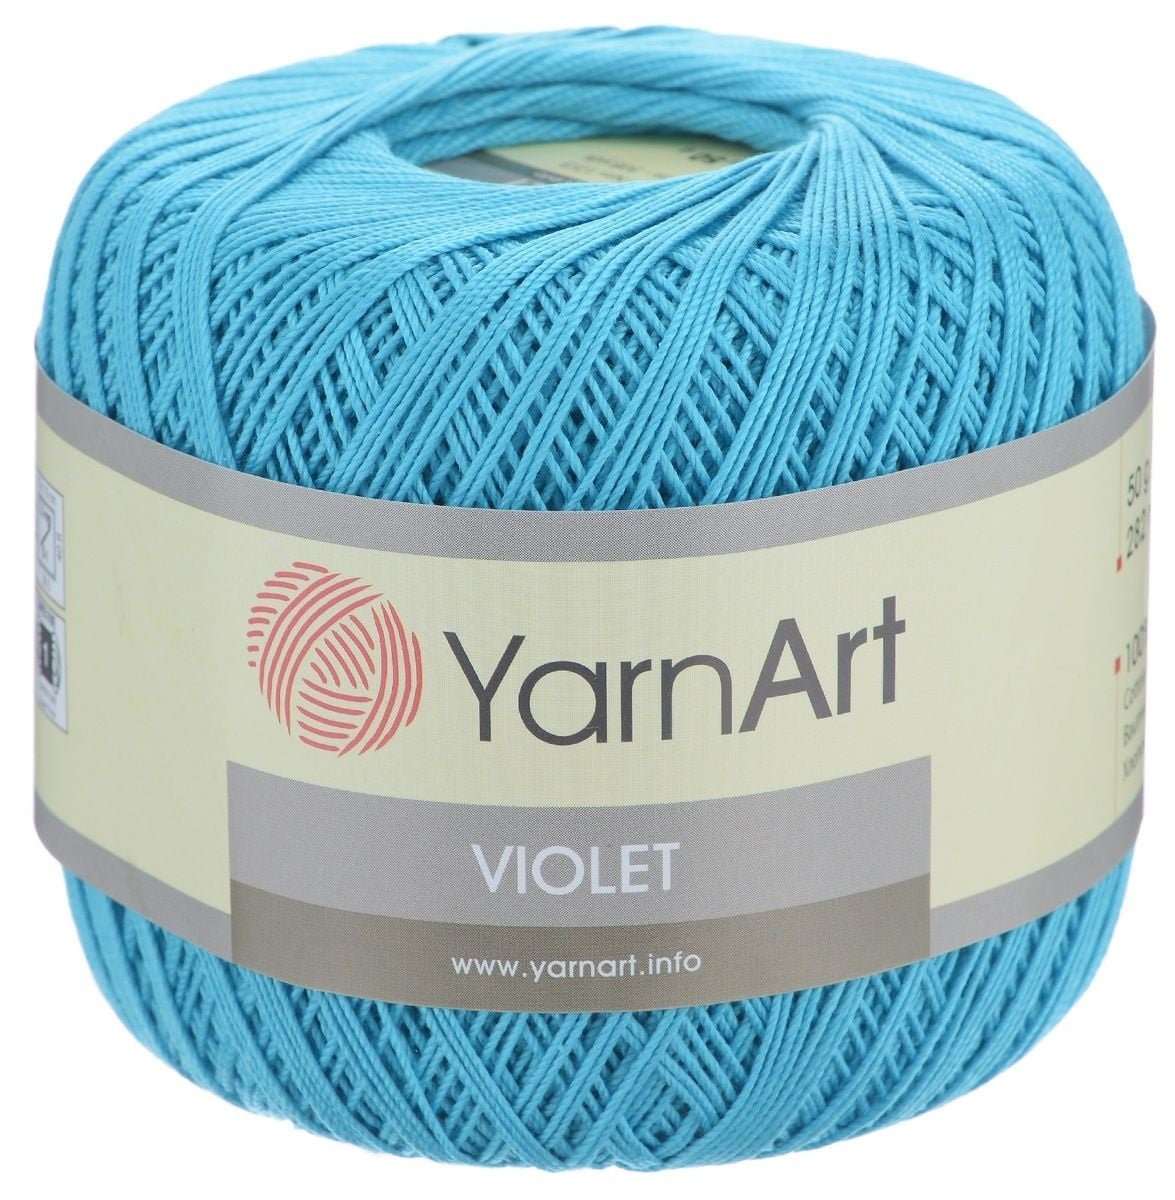 Цвет ниток для вязания. Пряжа Violet YARNART. ЯРНАРТ хлопок пряжа Виолет. Пряжа ЯРНАРТ Виолет 50г. YARNART Violet пряжа цвета.